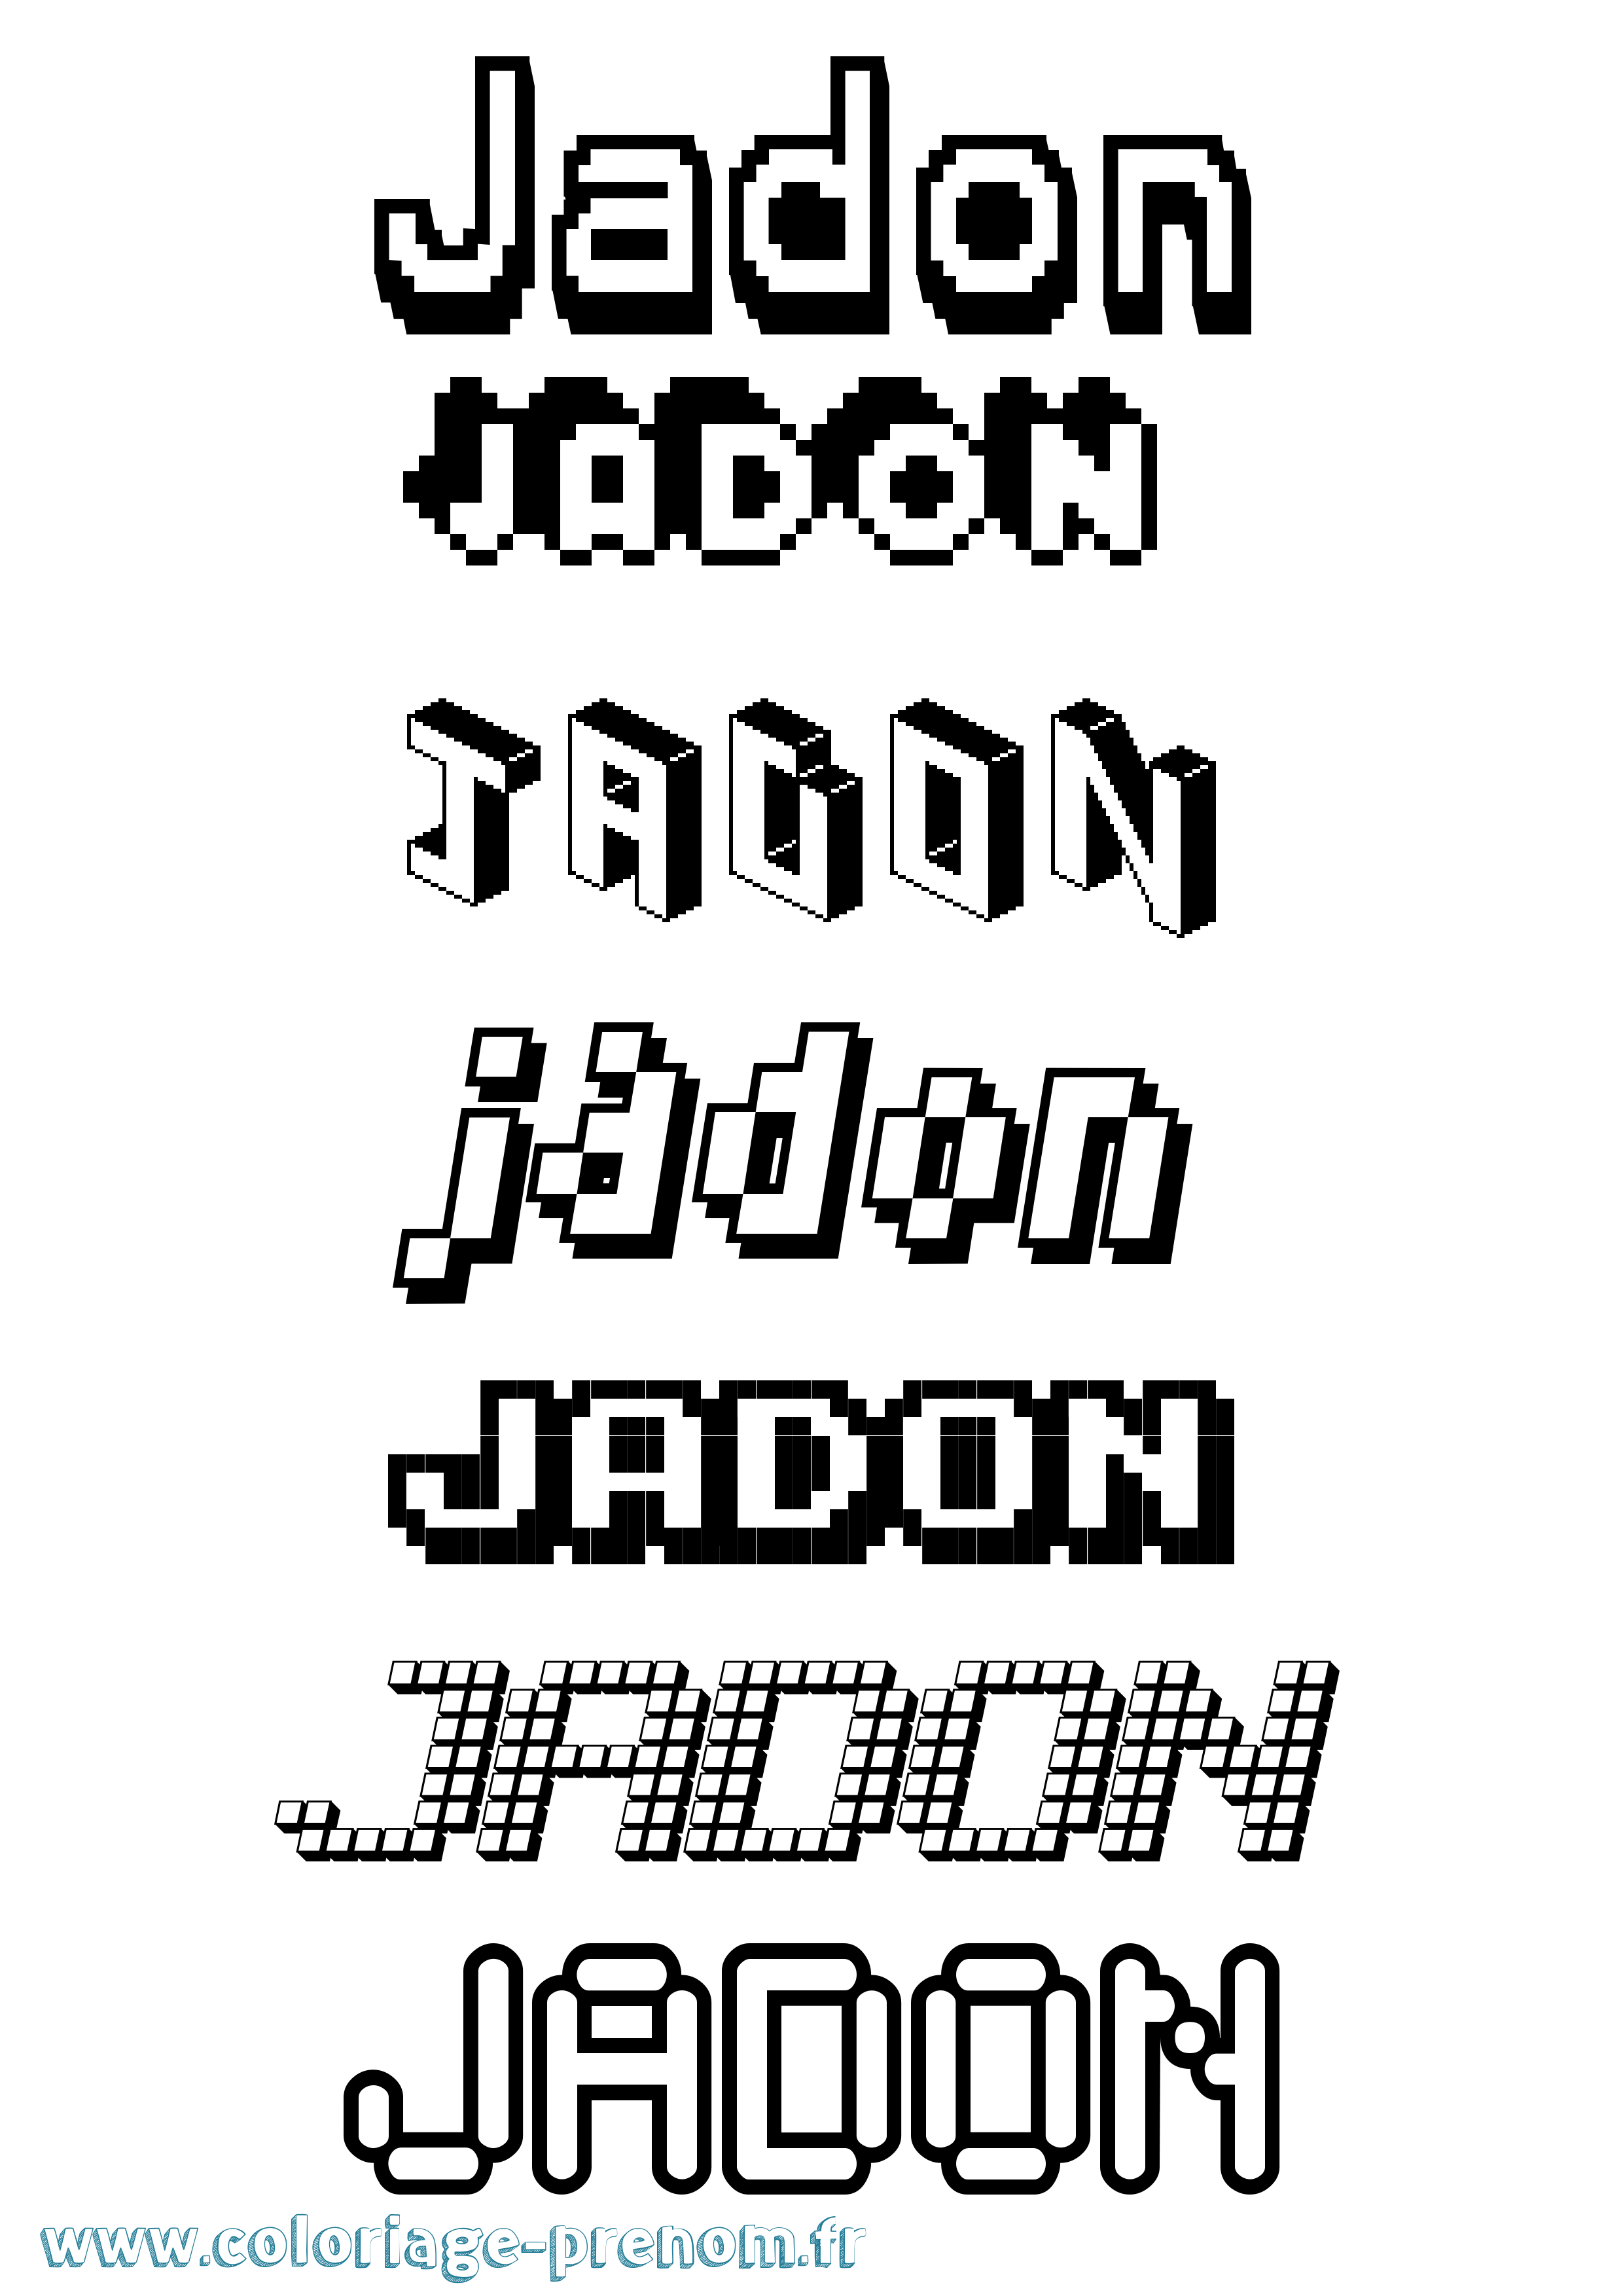 Coloriage prénom Jadon Pixel